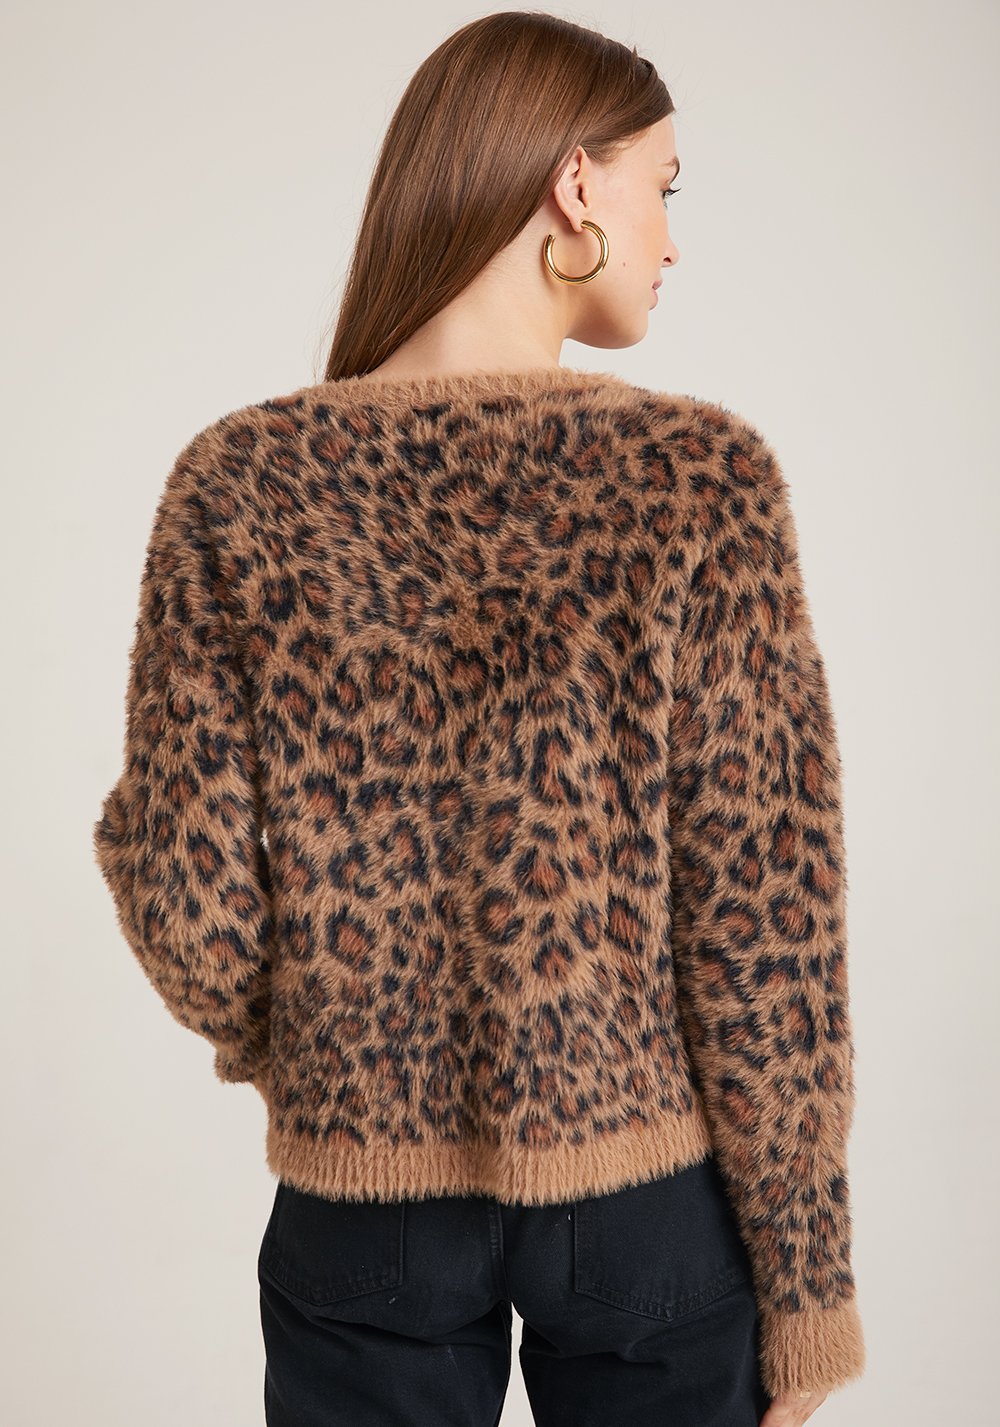 Bella Dahl - Crew Neck Sweater in Golden Leopard